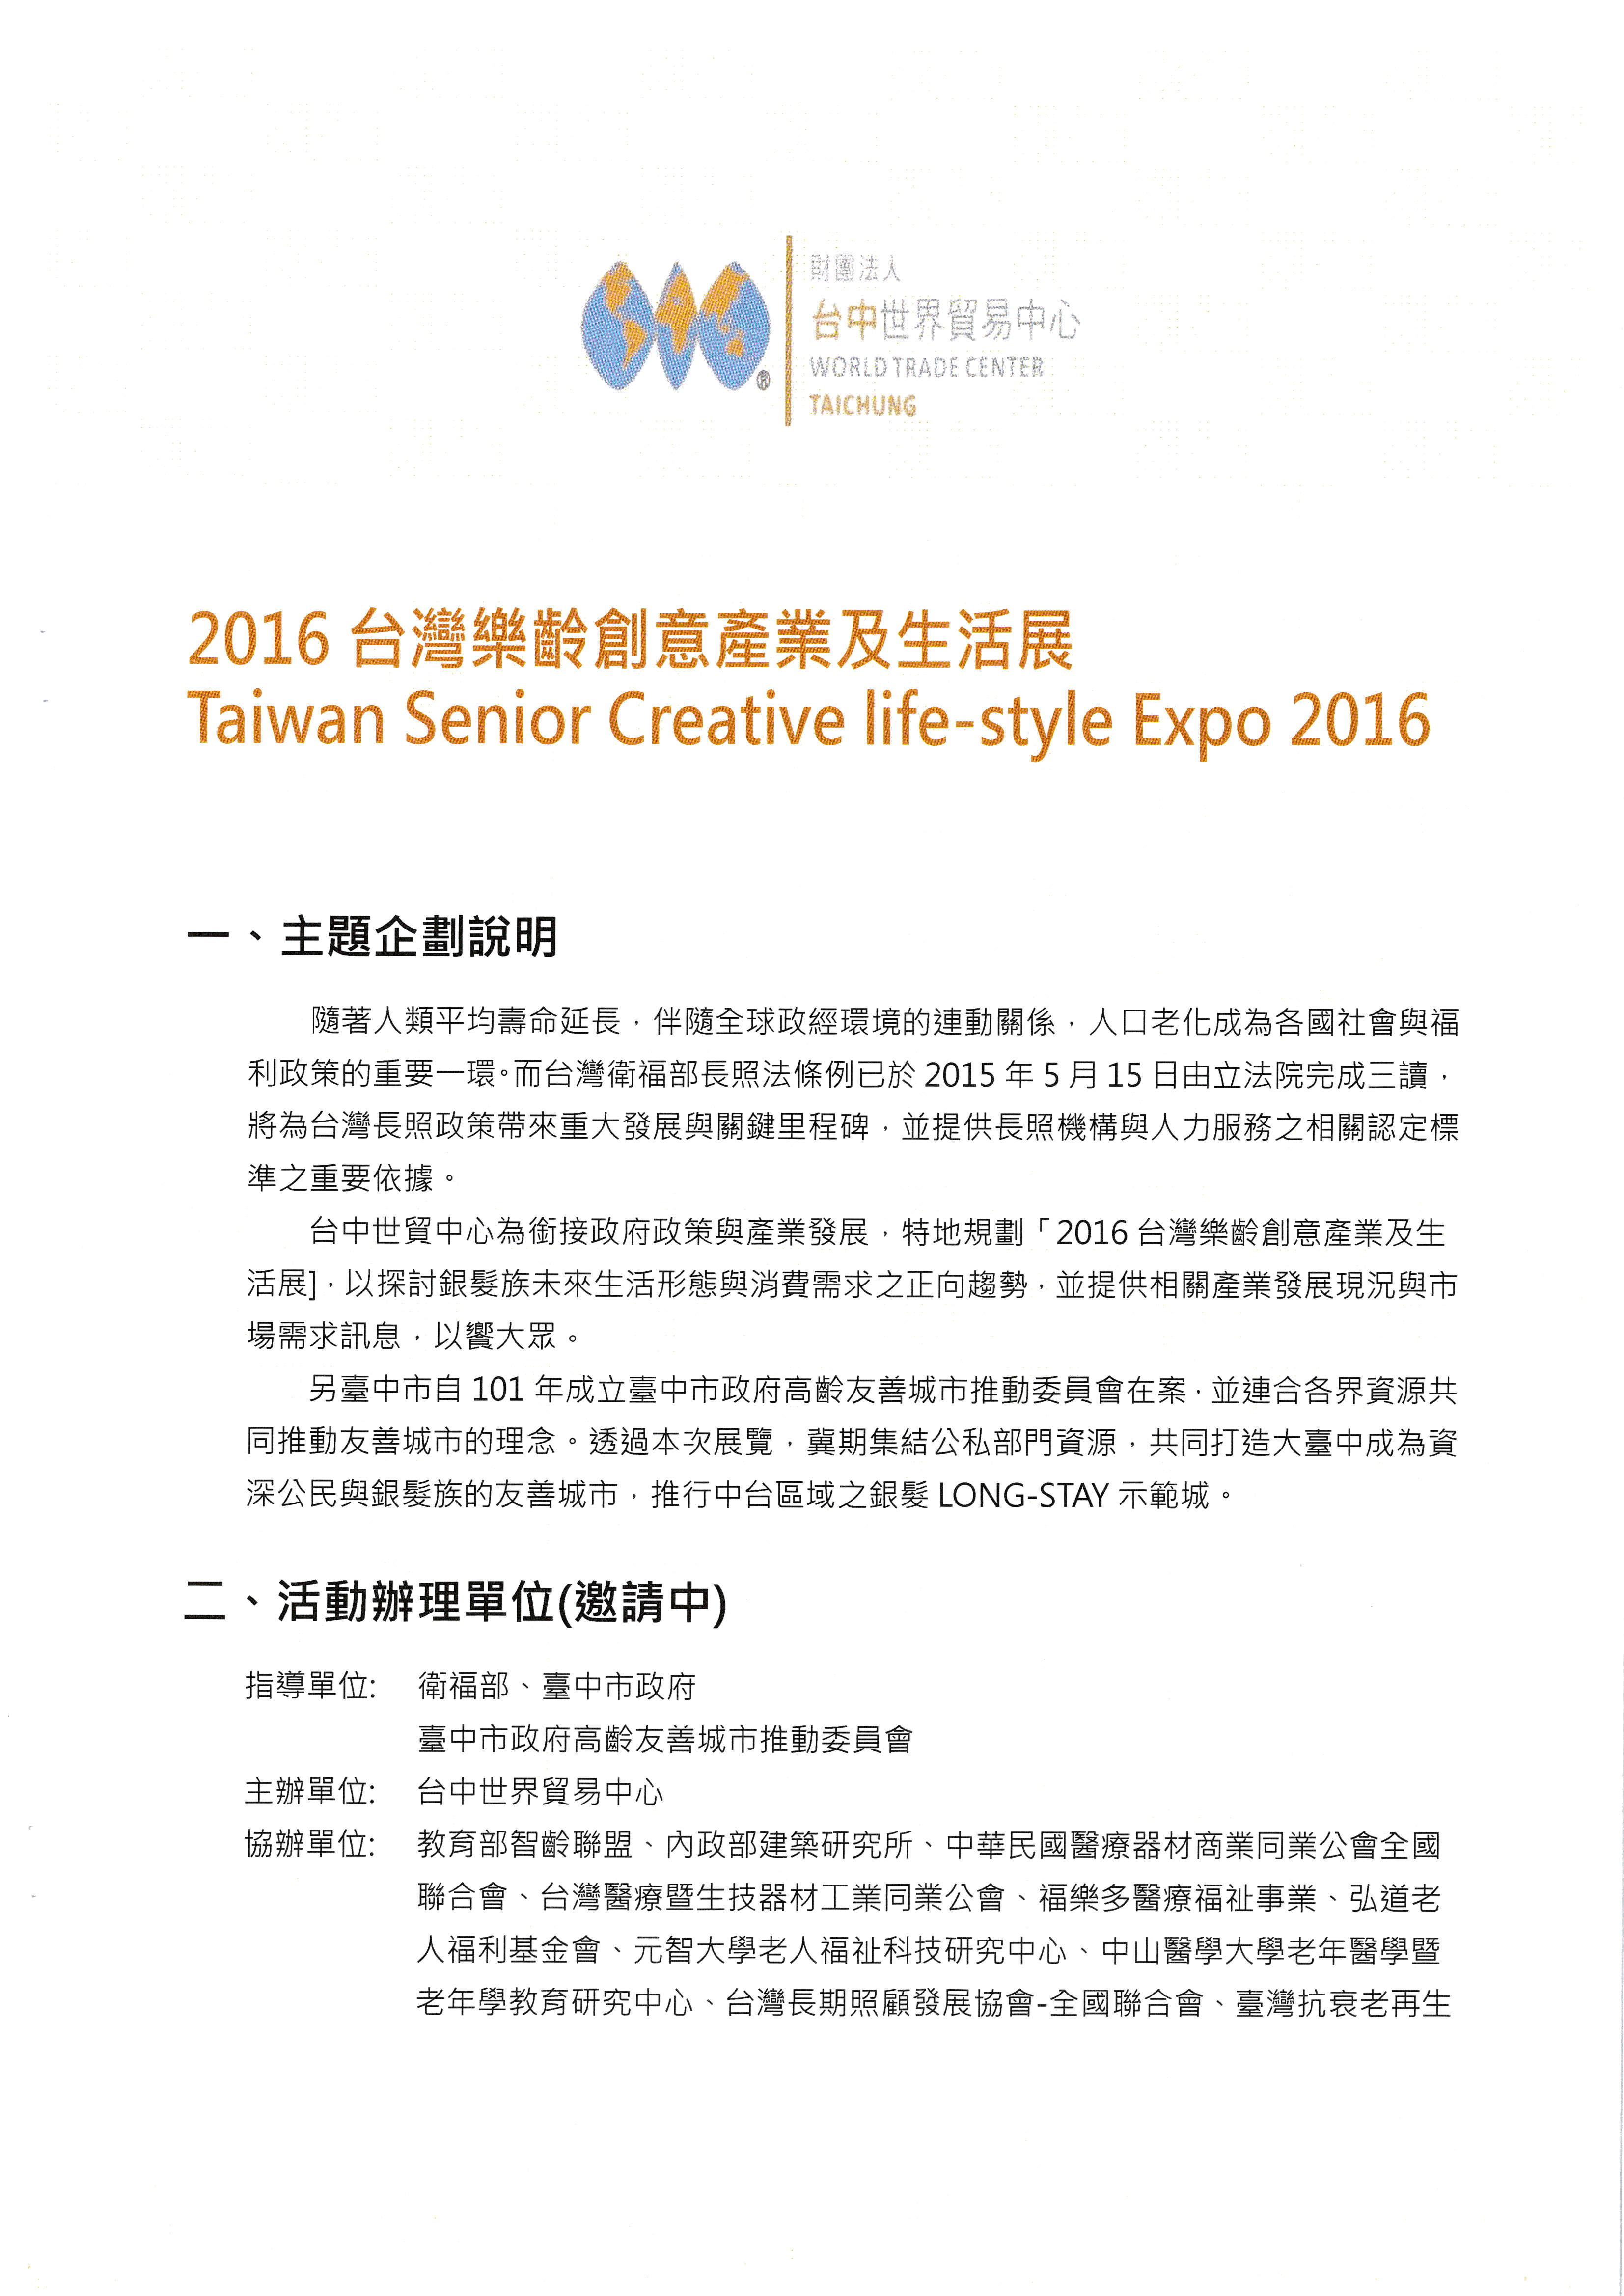 本會協辦台中世界貿易中心2016台灣樂齡創意產業生活展